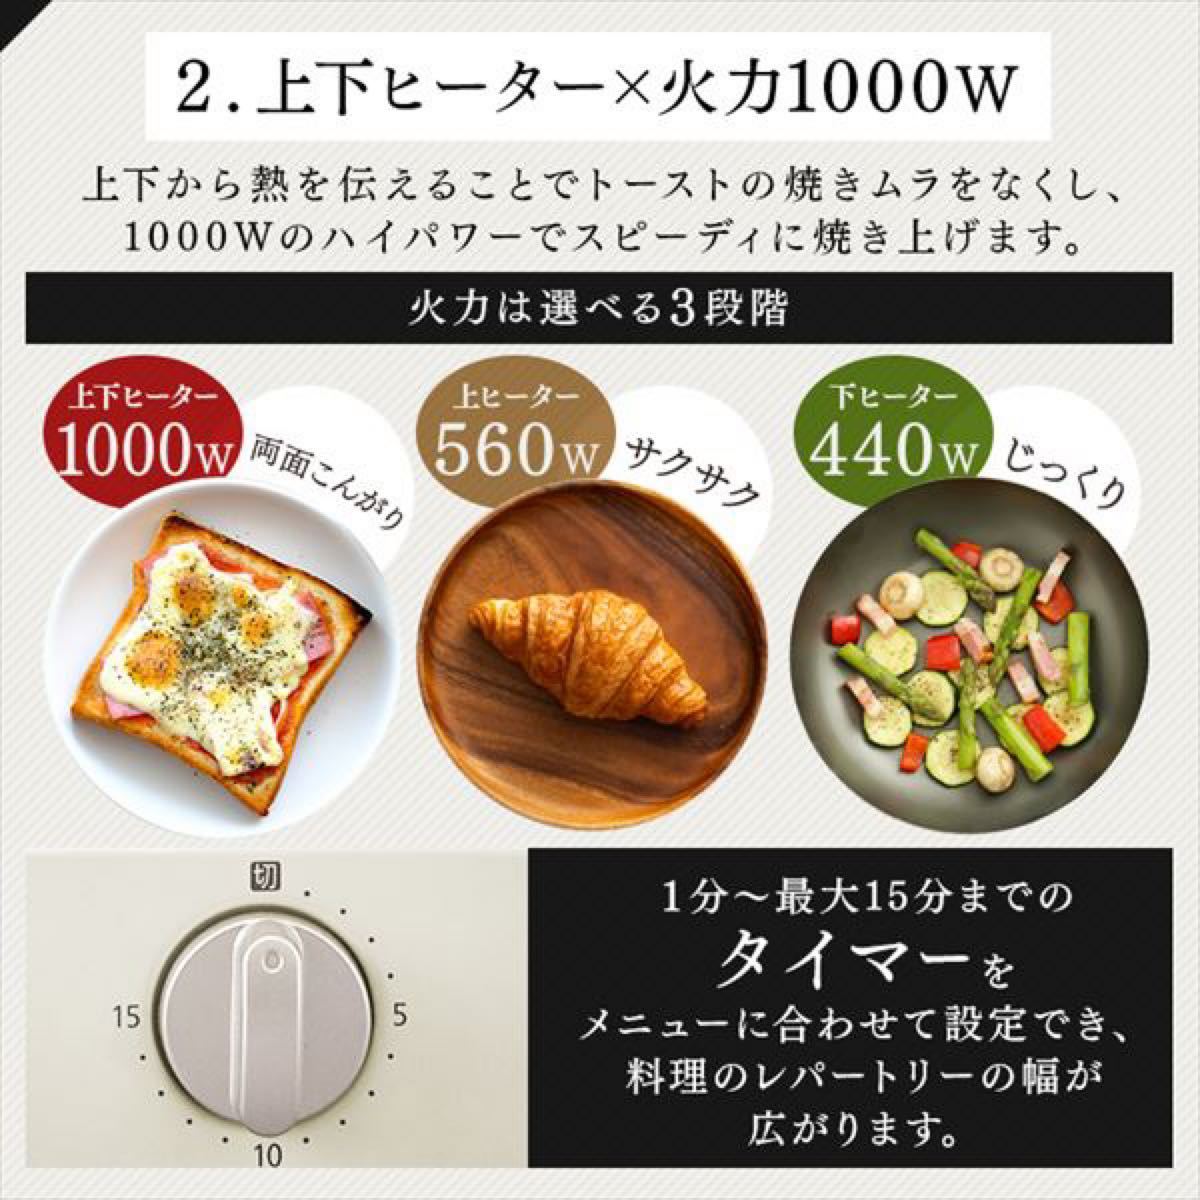 【値下げ】★新品・未使用★オーブントースター(ricopa) EOT-R021 アイリスオーヤマ 